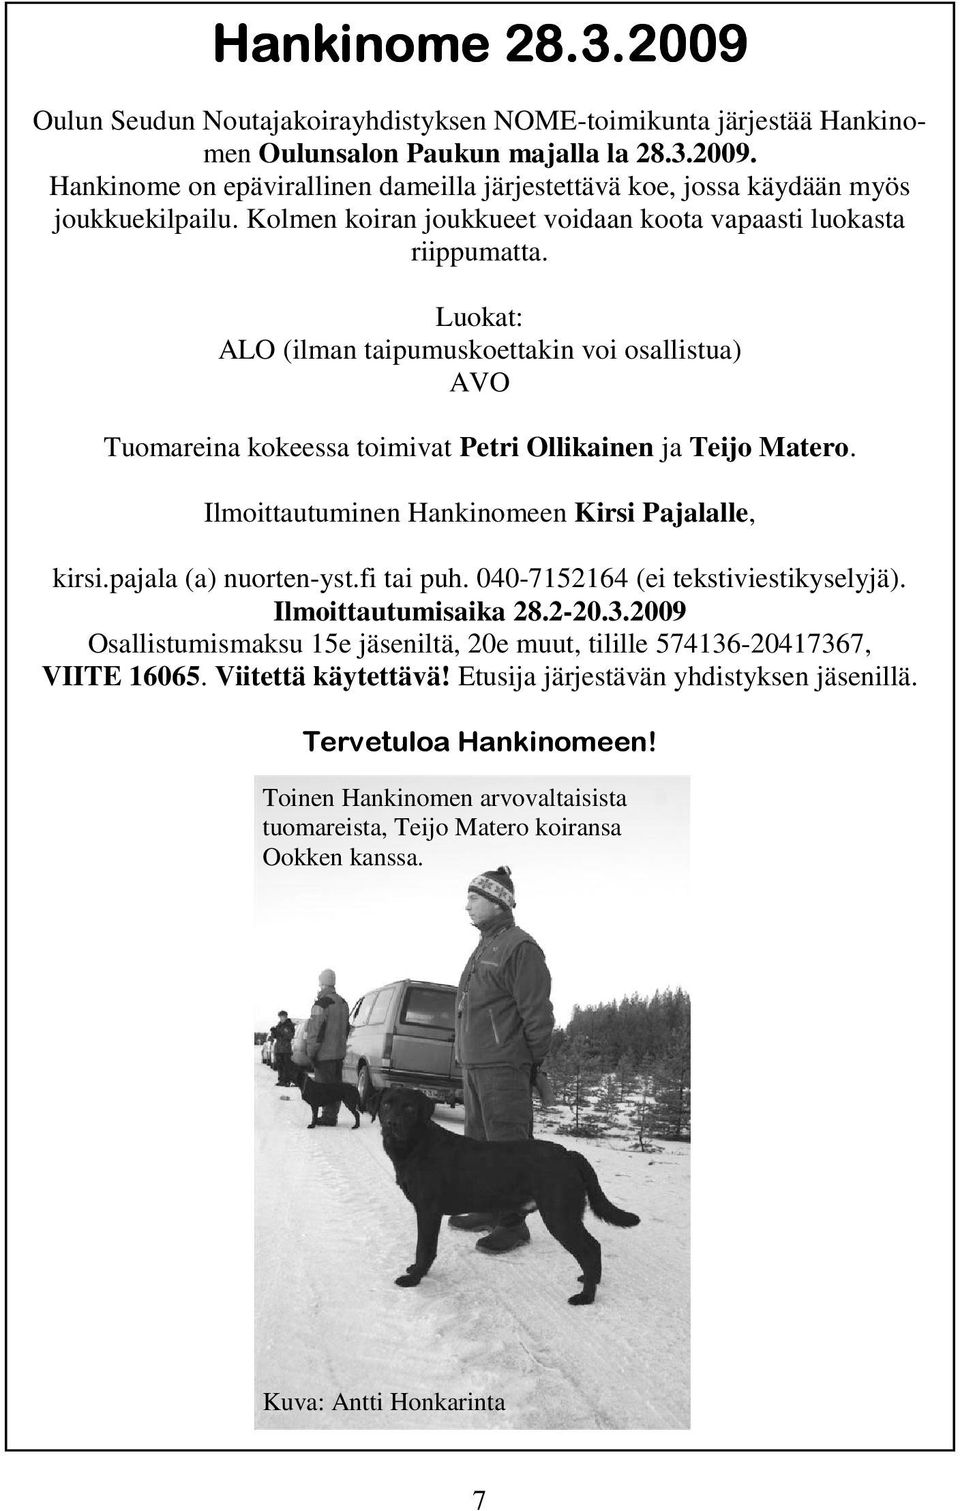 Ilmoittautuminen Hankinomeen Kirsi Pajalalle, kirsi.pajala (a) nuorten-yst.fi tai puh. 040-7152164 (ei tekstiviestikyselyjä). Ilmoittautumisaika 28.2-20.3.